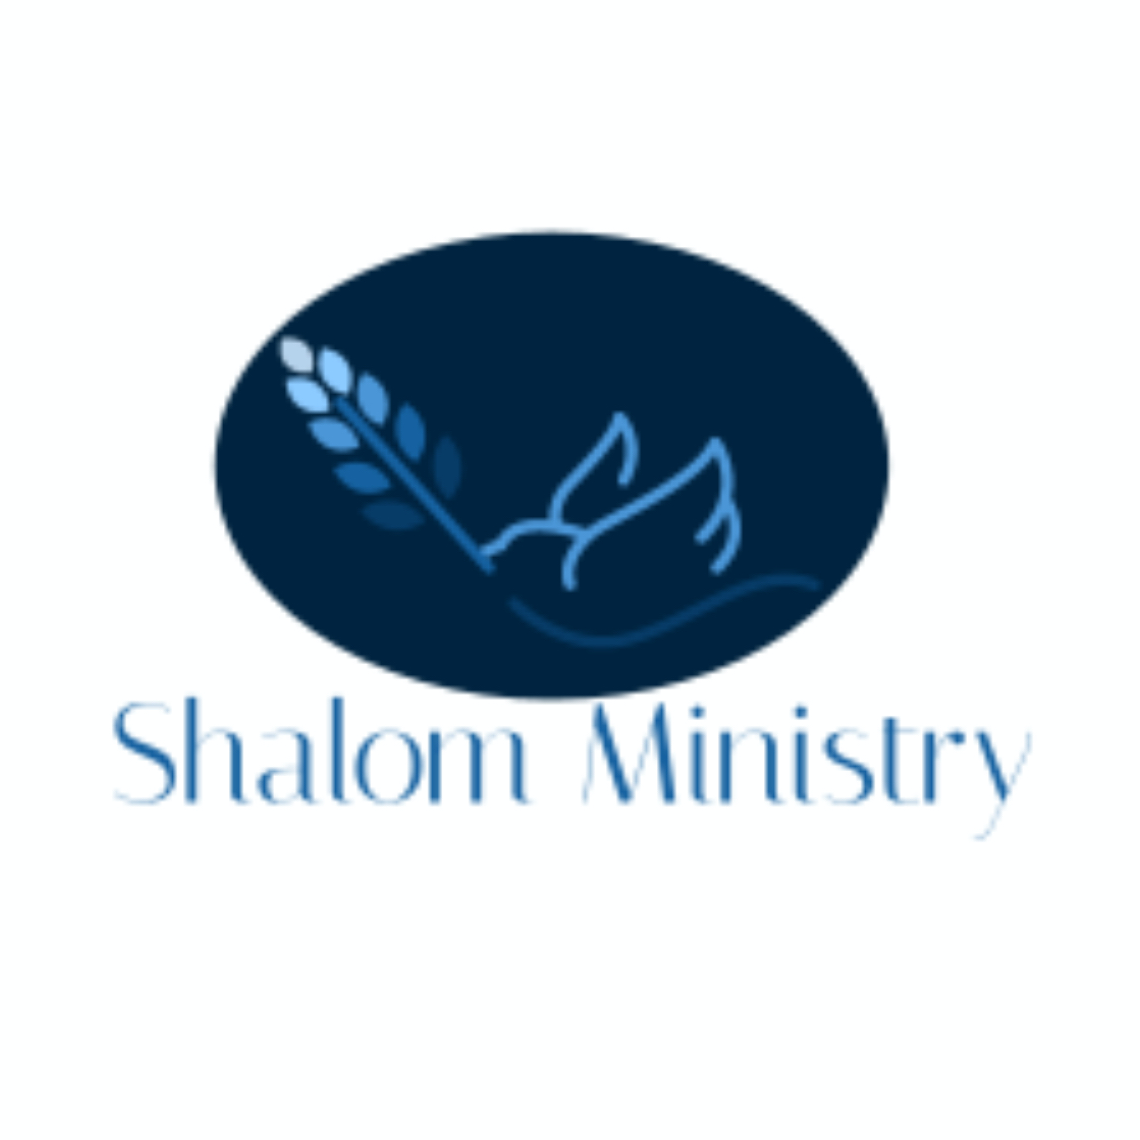 ShalomFM